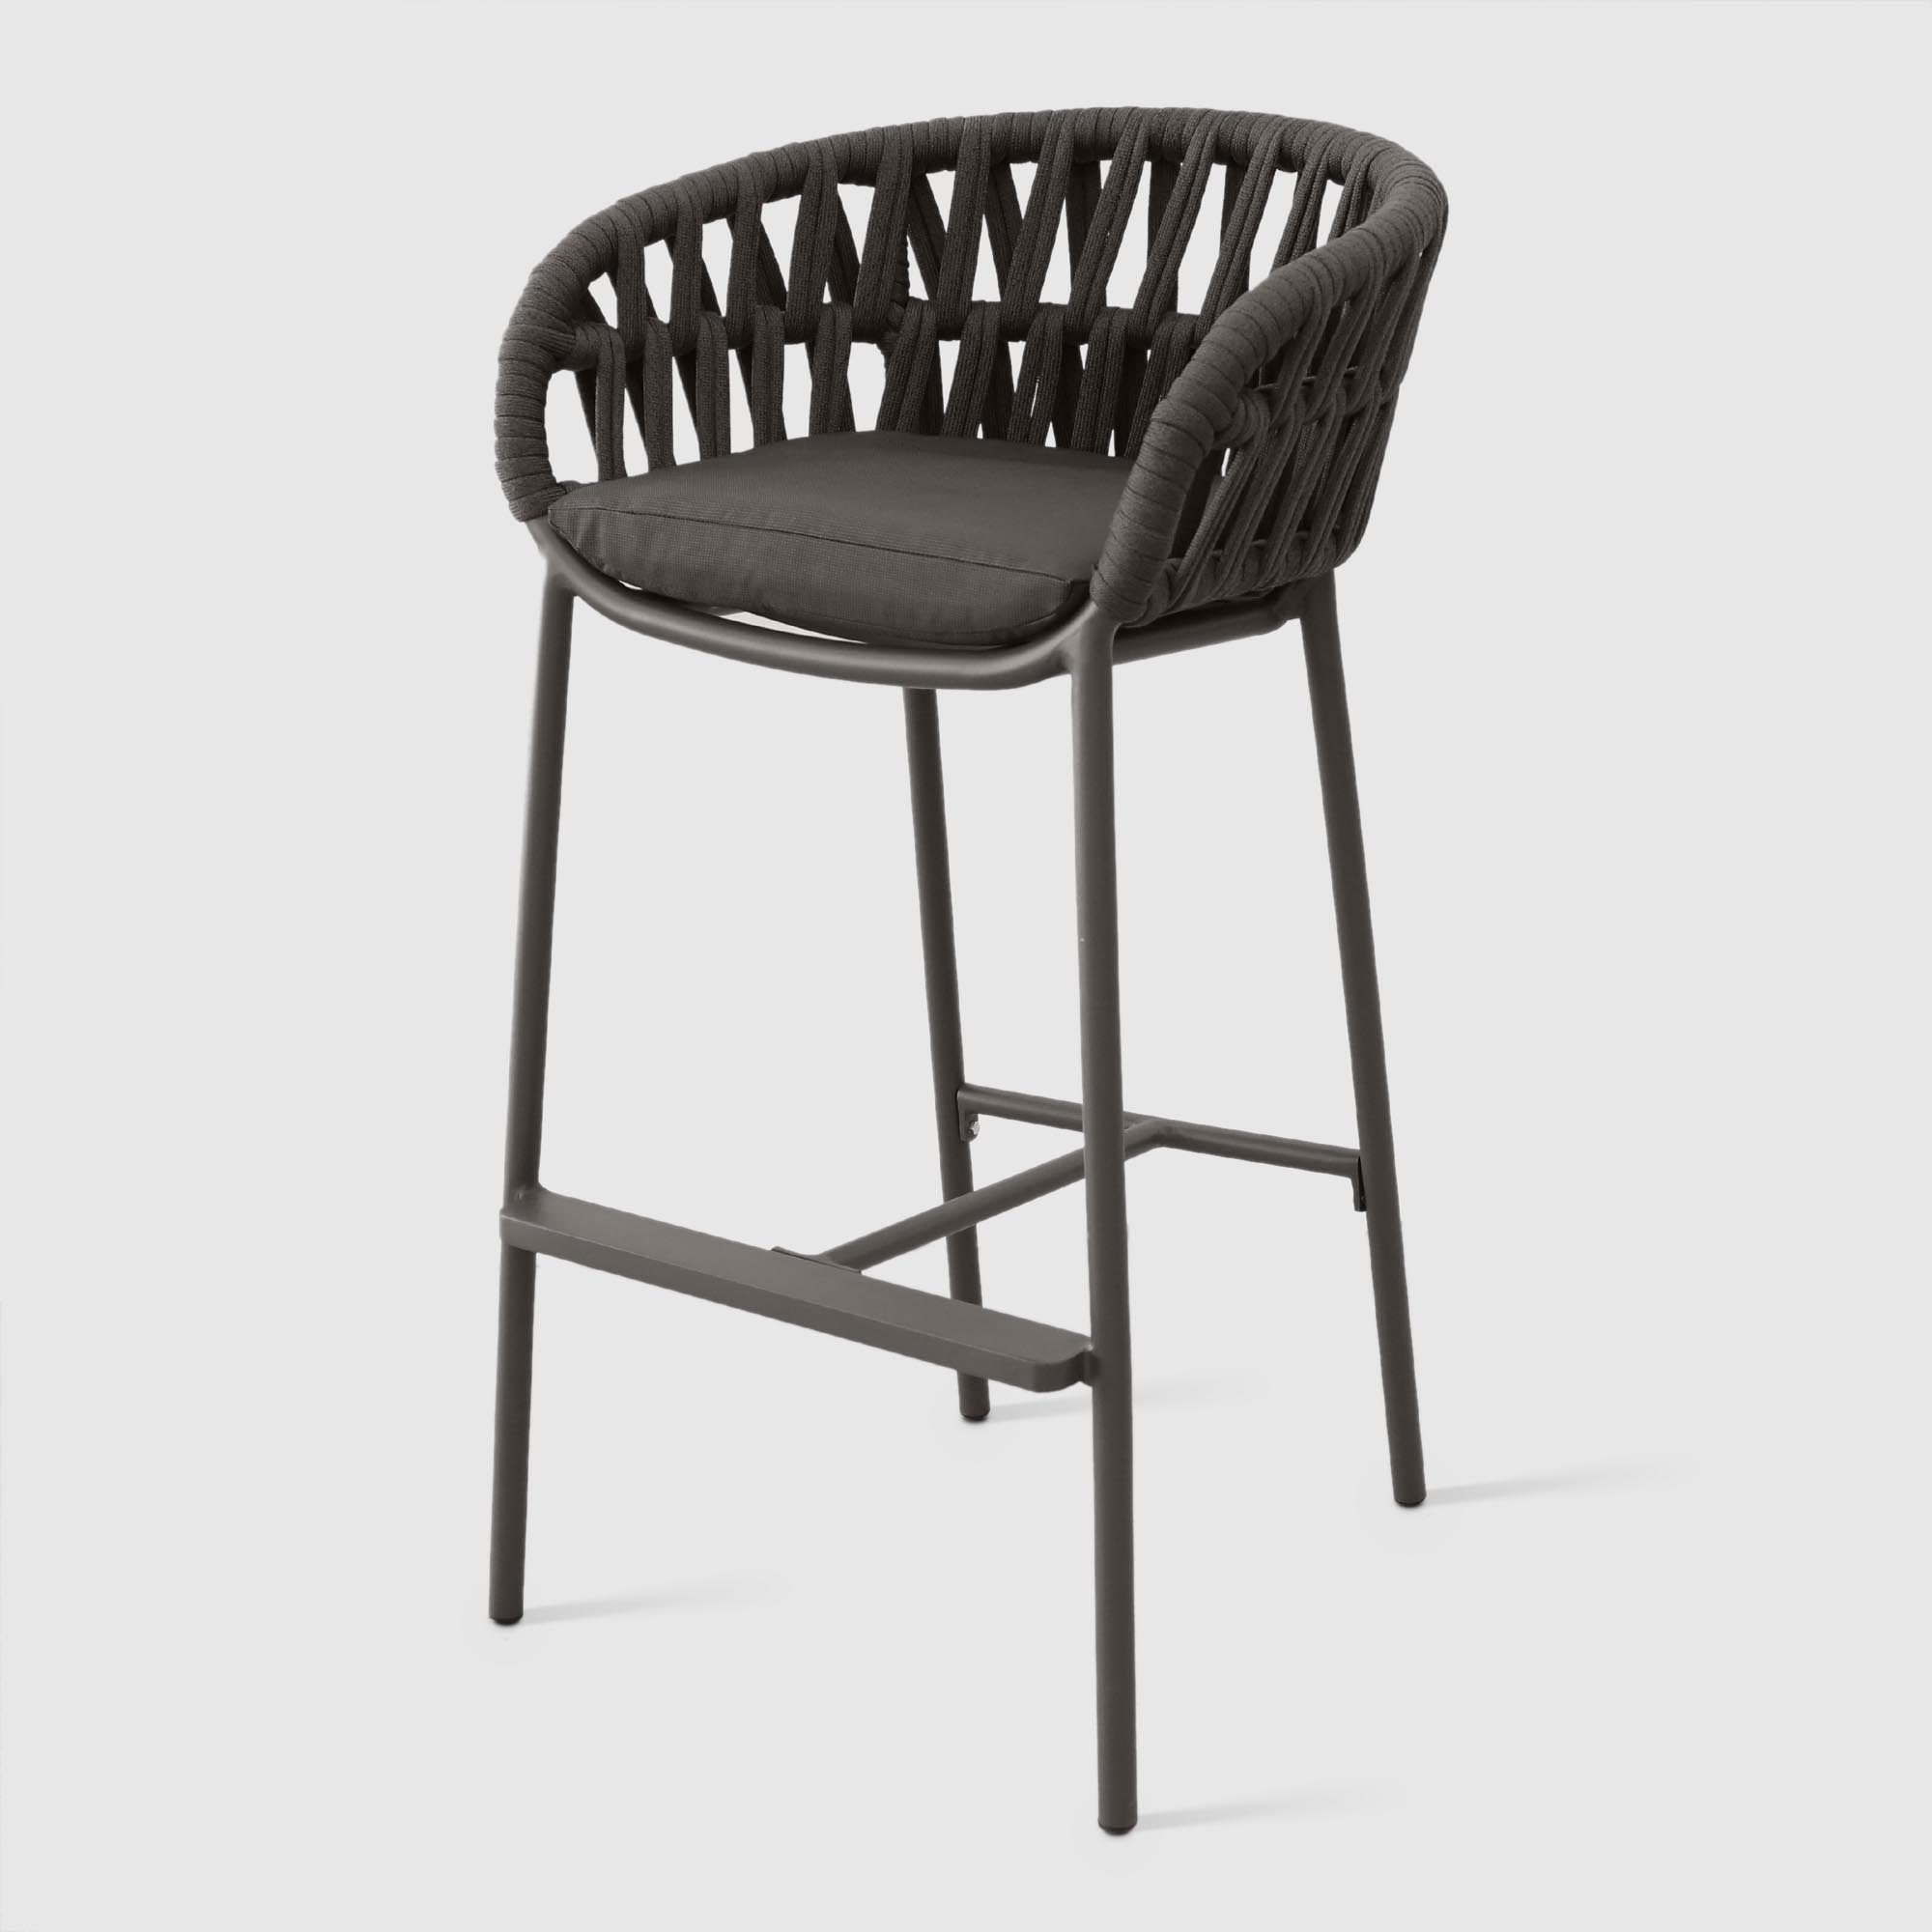 Барное кресло Drigani Drop антрацит с тёмно-коричневым 57х56х104 см, цвет тёмно-коричневый - фото 1